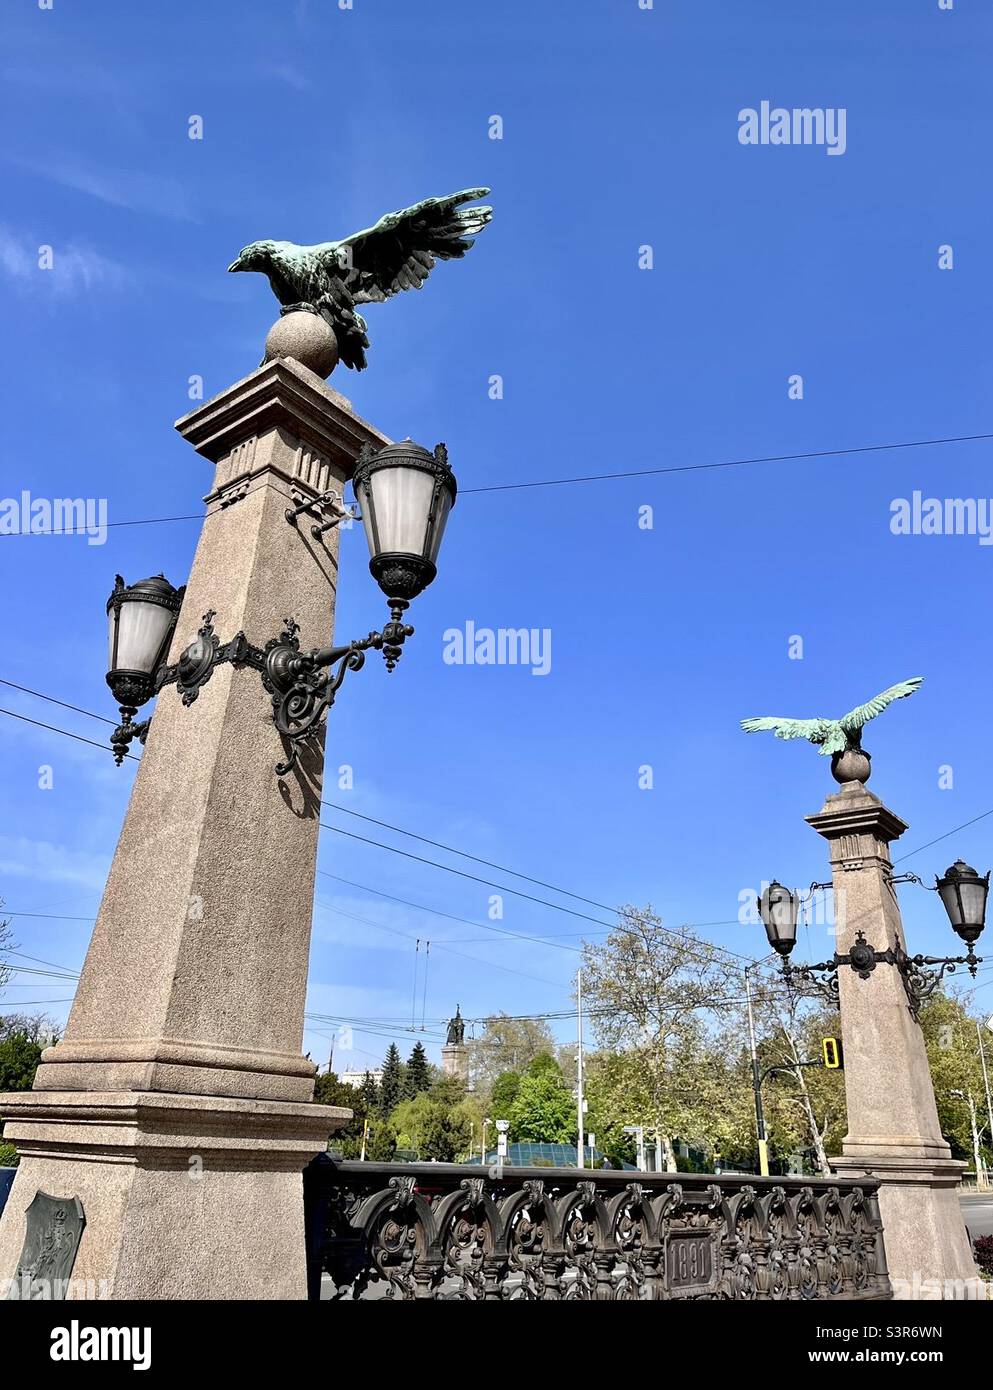 Cast iron eagle statues at the Eagle’s Bridge in Sofia, Bulgaria, Europe, Balkans Stock Photo